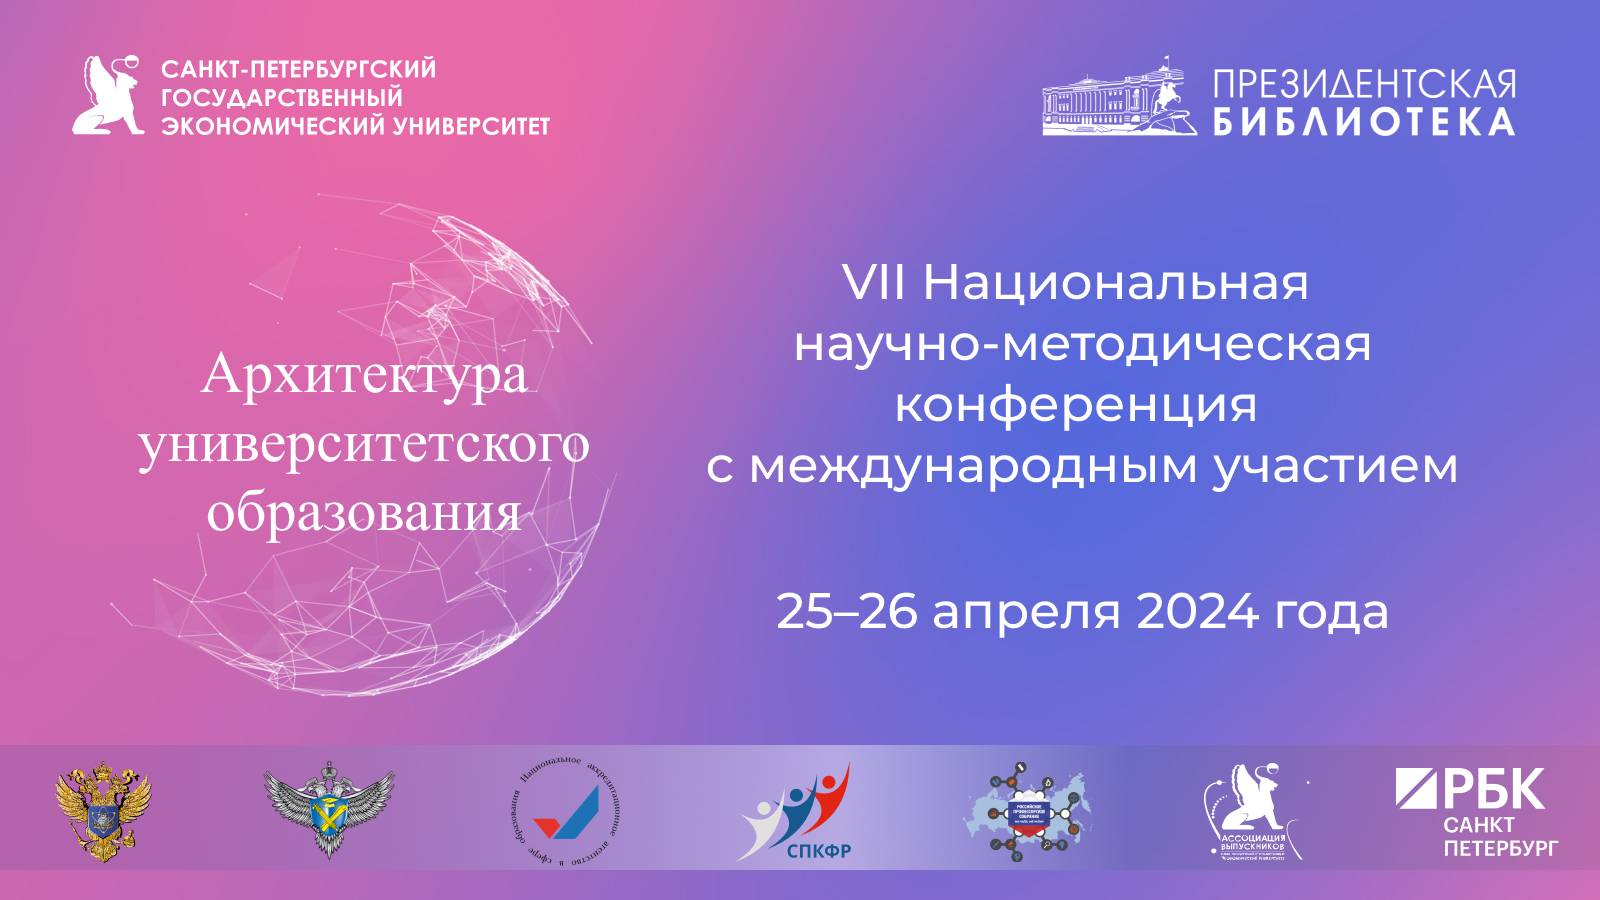 VII Национальная научно-методическая конференция